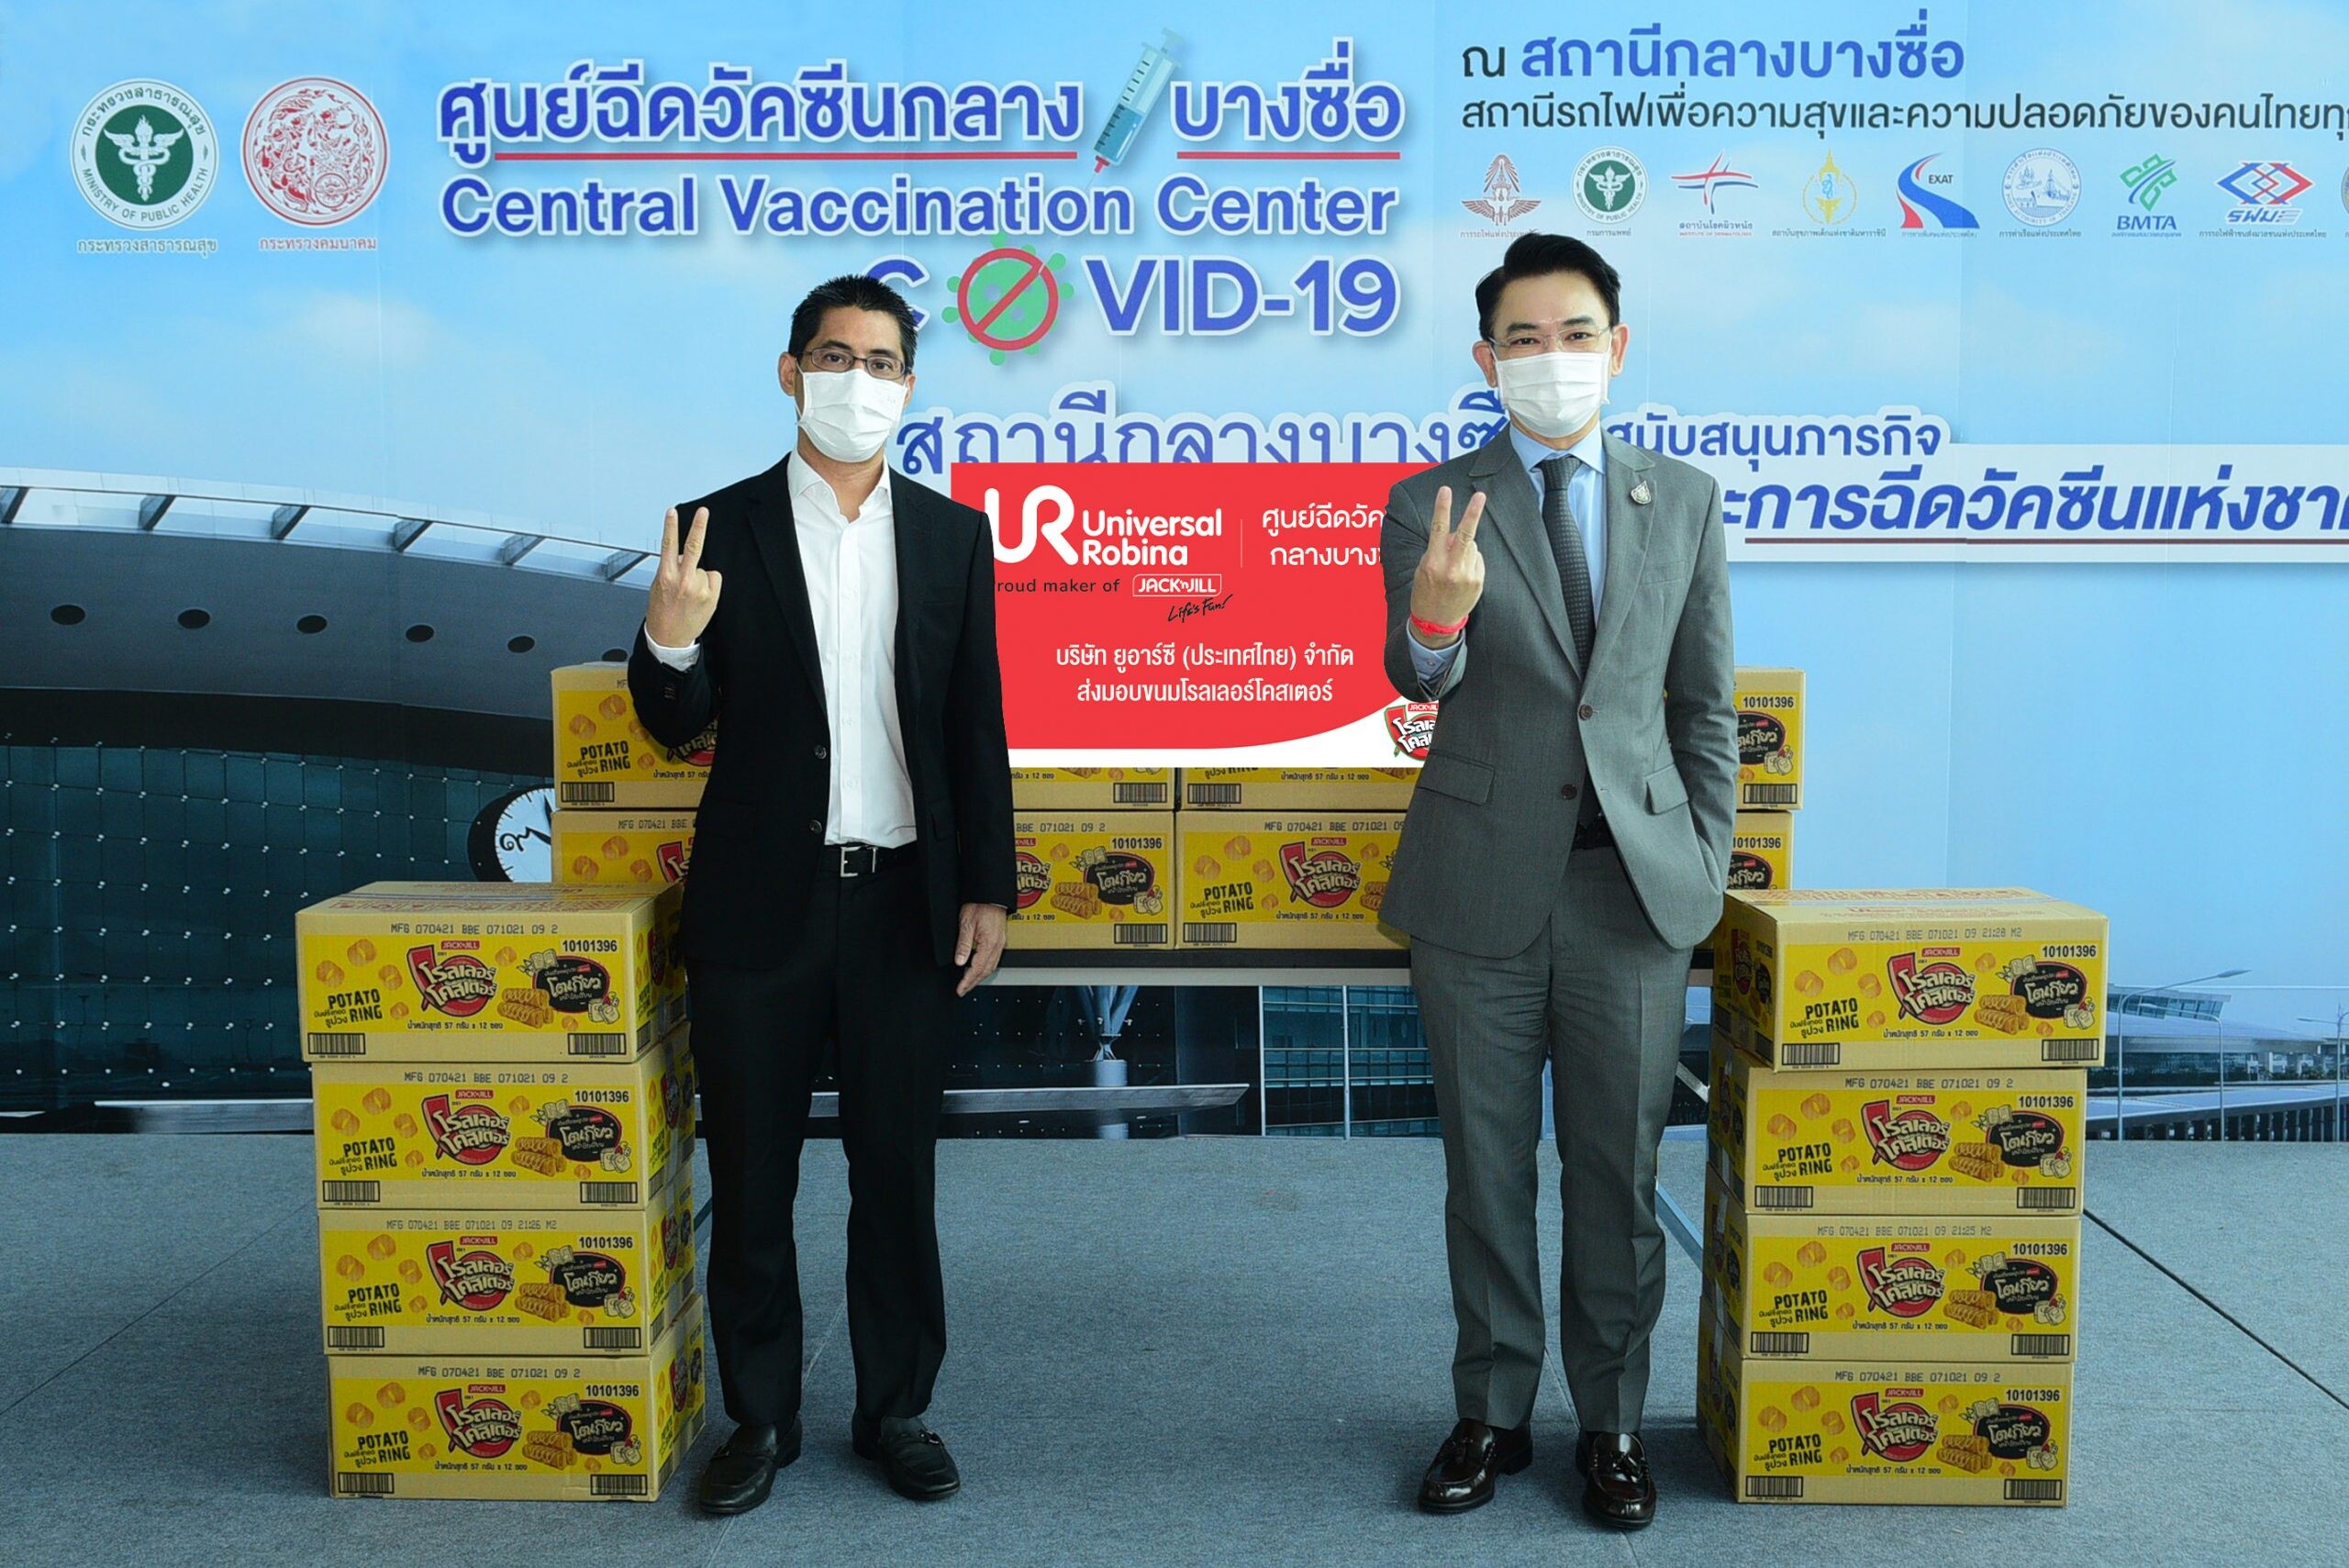 ยูอาร์ซี (ประเทศไทย) ร่วมเติมพลังสู่สังคมไทย มอบขนมแก่บุคลากรทางการแพทย์ เจ้าหน้าที่ ประชาชน หนุนฉีดวัคซีนป้องโควิด-19